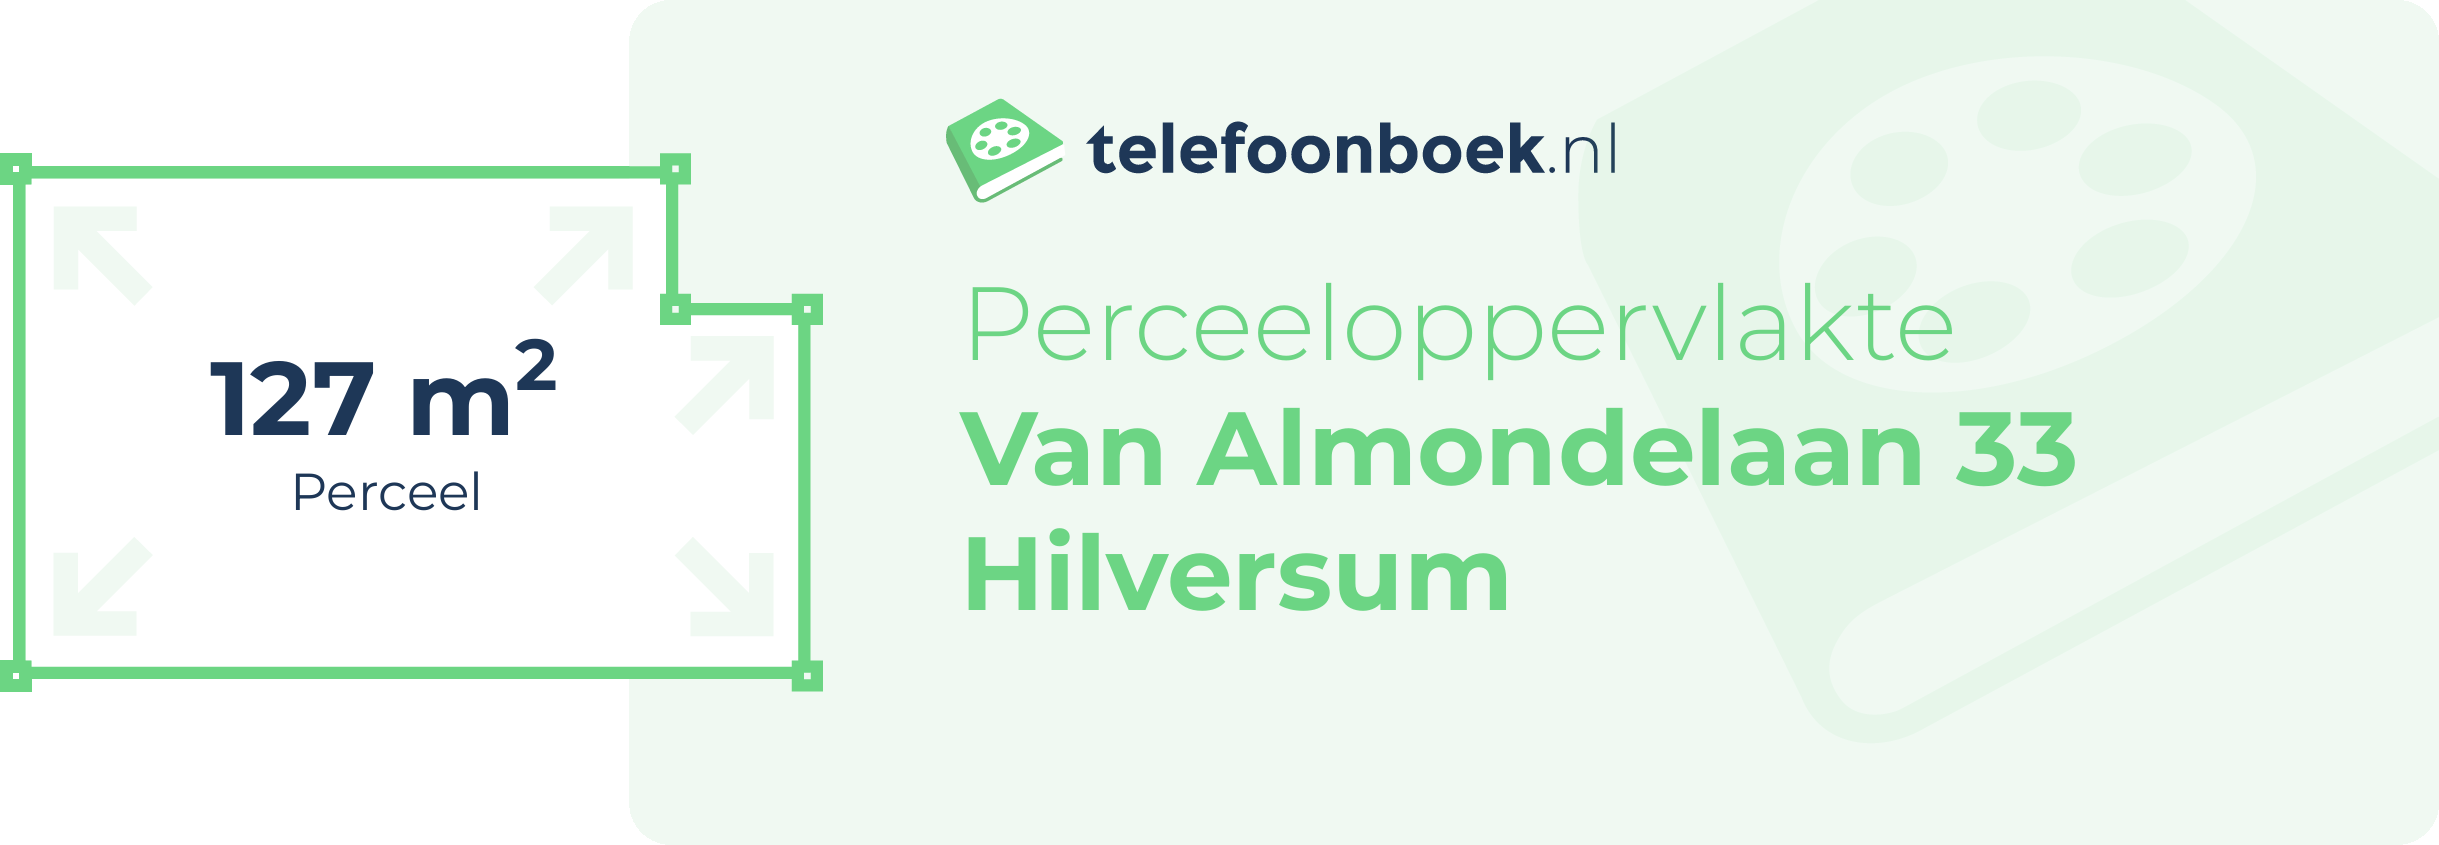 Perceeloppervlakte Van Almondelaan 33 Hilversum